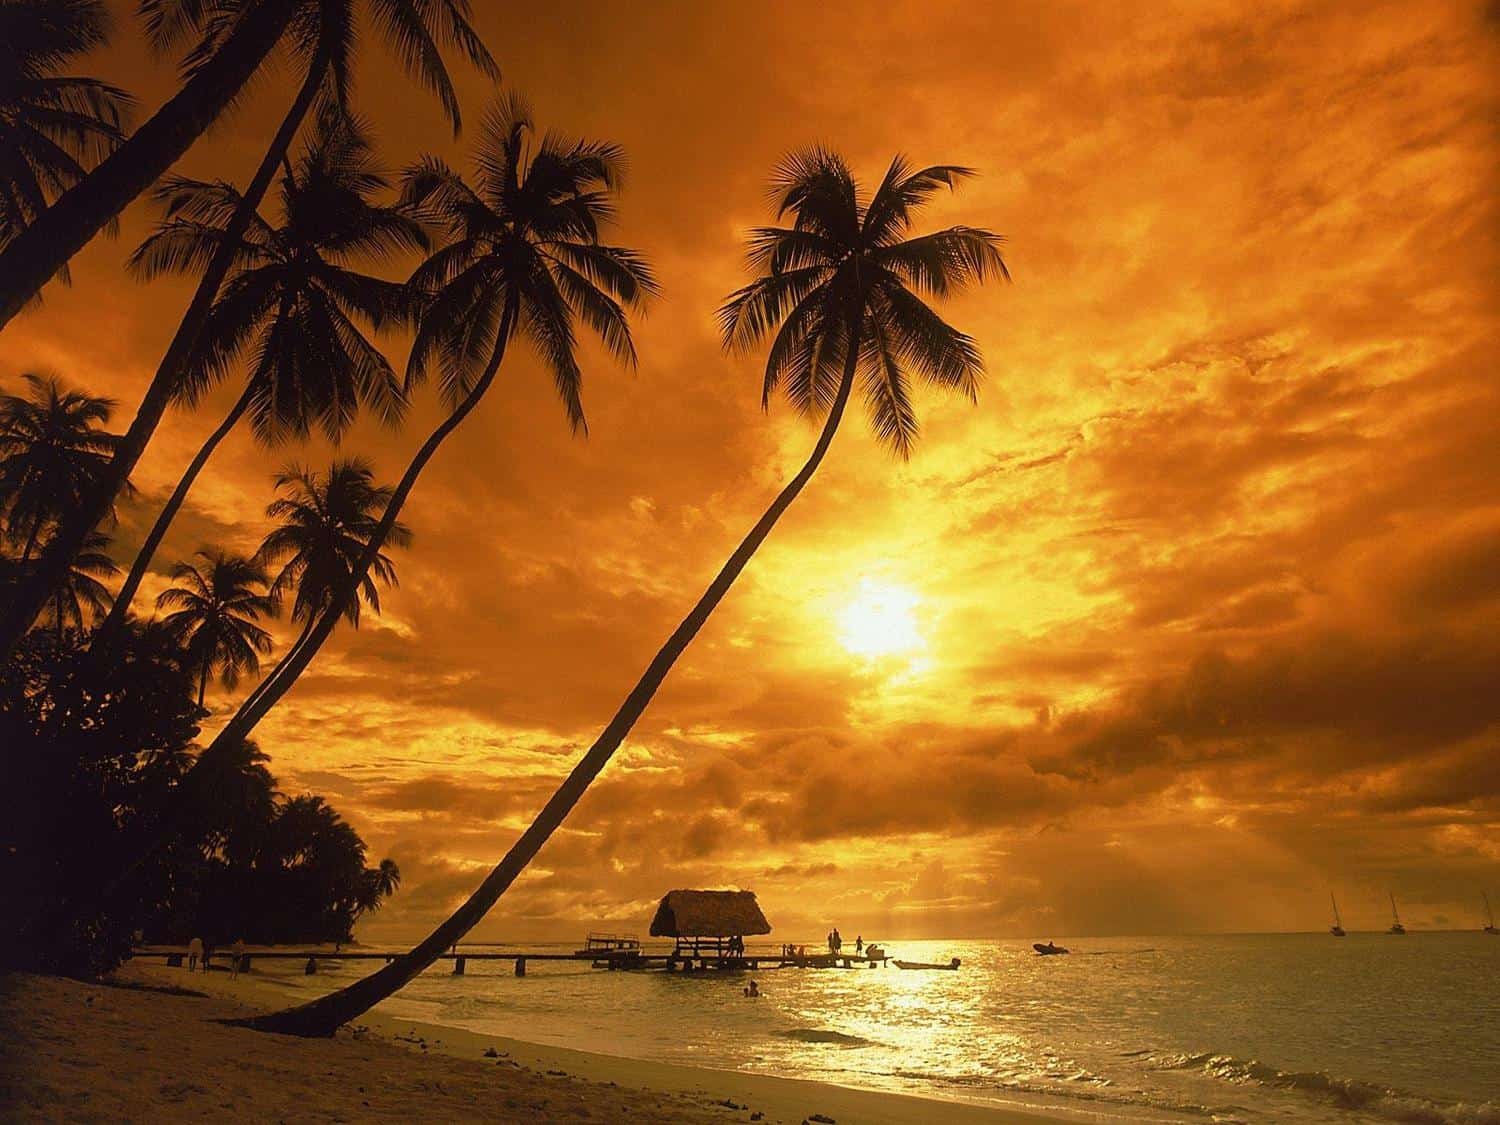 Карибские острова - отдых в 2019 году